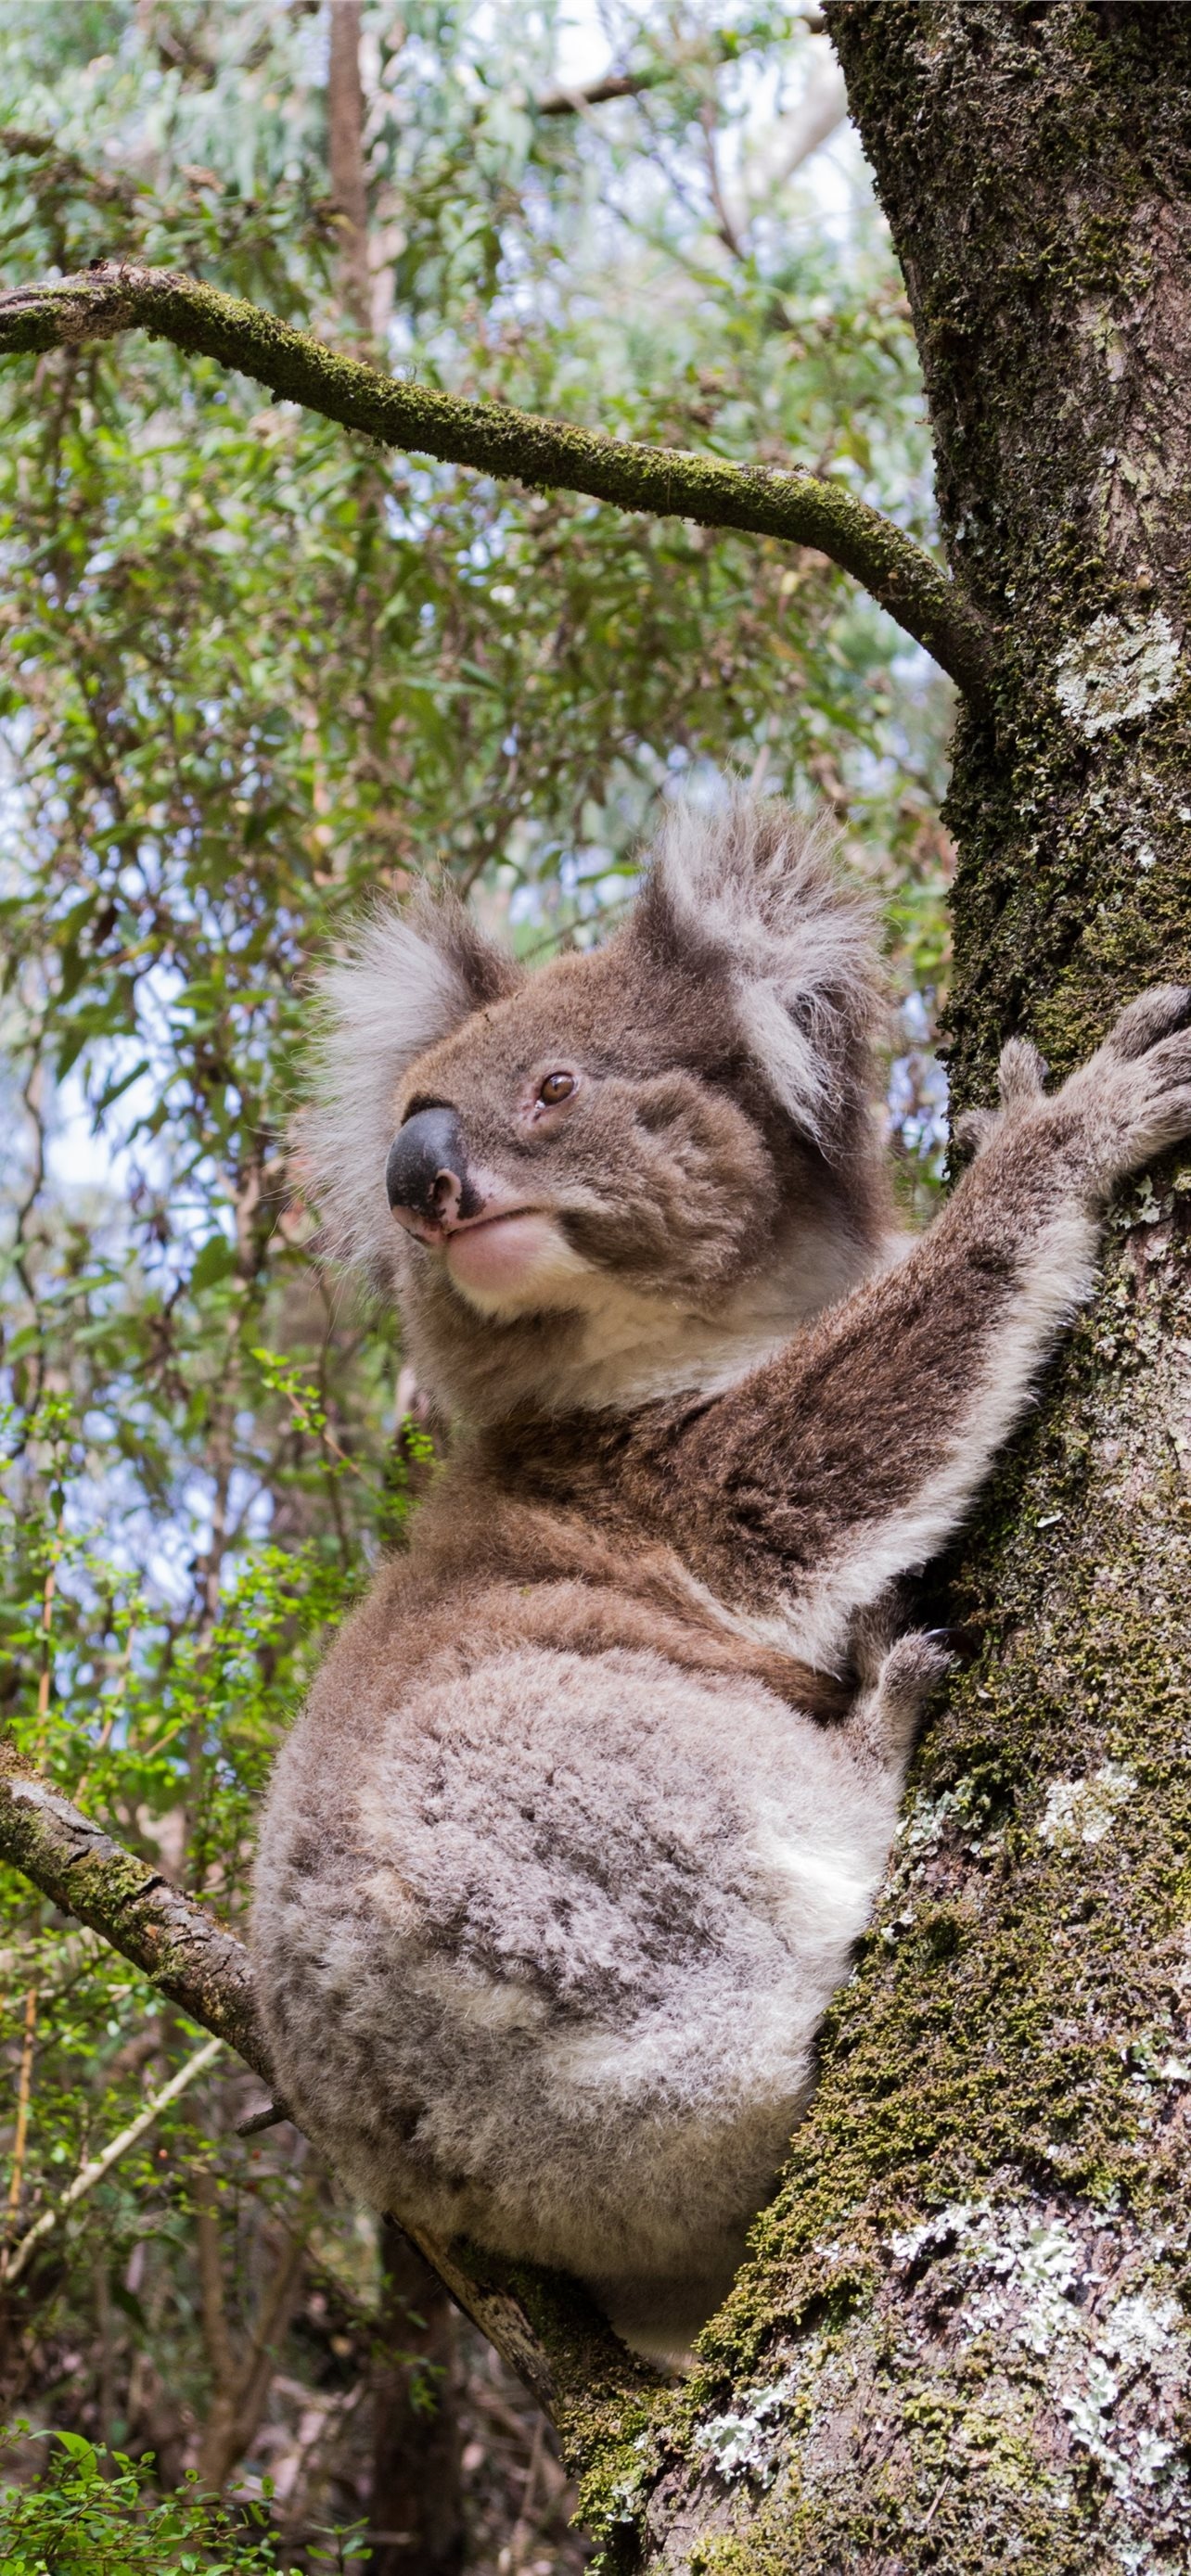 Best HD koala wallpapers, iPhone koala backgrounds, Koala beauty at its finest, Digital masterpieces, 1290x2780 HD Handy